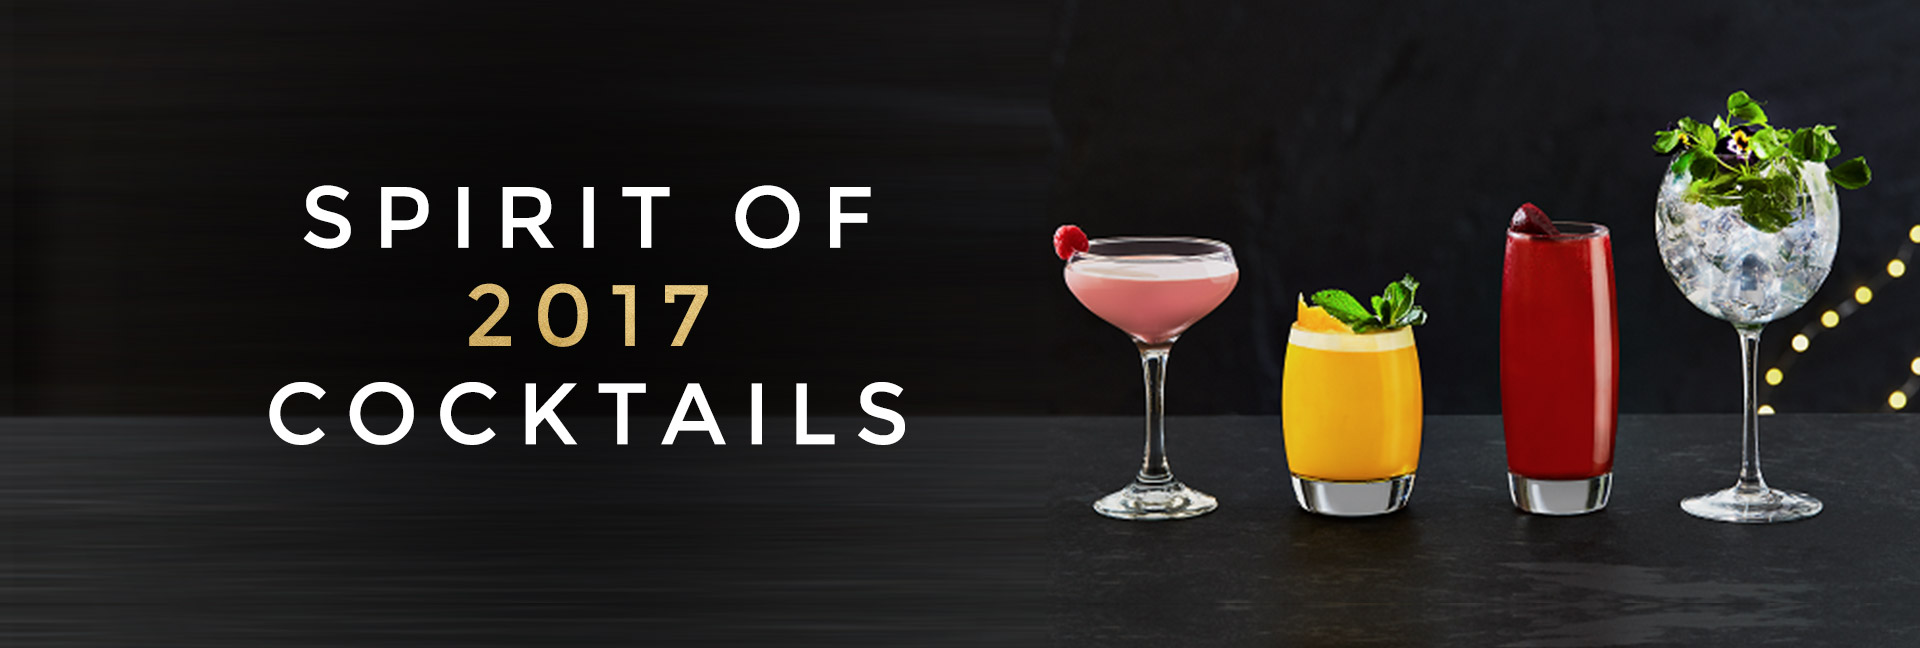 Spirit of 2017 cocktails at All Bar One Cheltenham